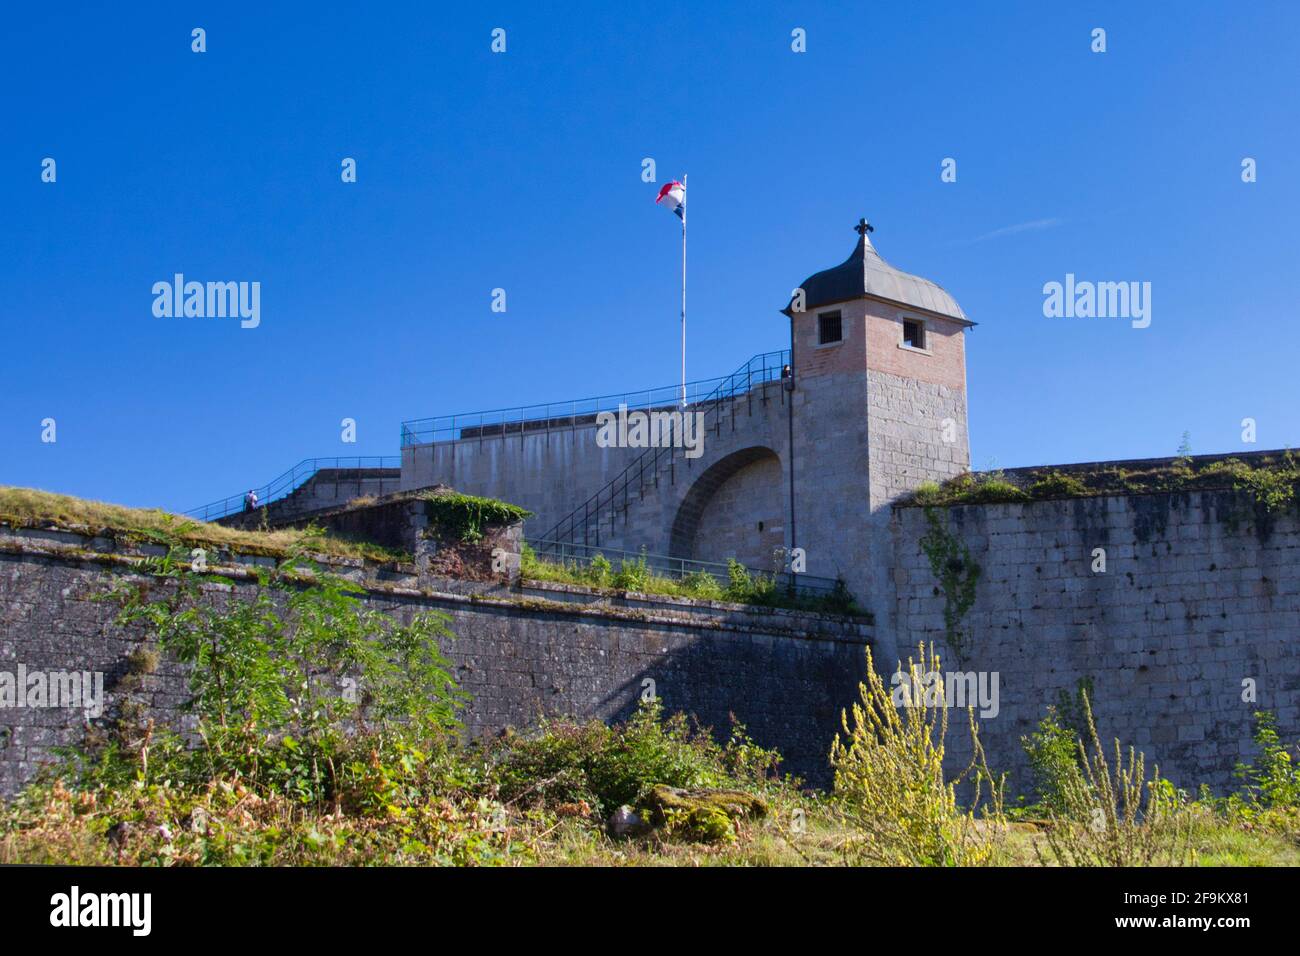 FRANCE, BESANÇON - JULY 29, 2017: Citadel of Besançon Stock Photo